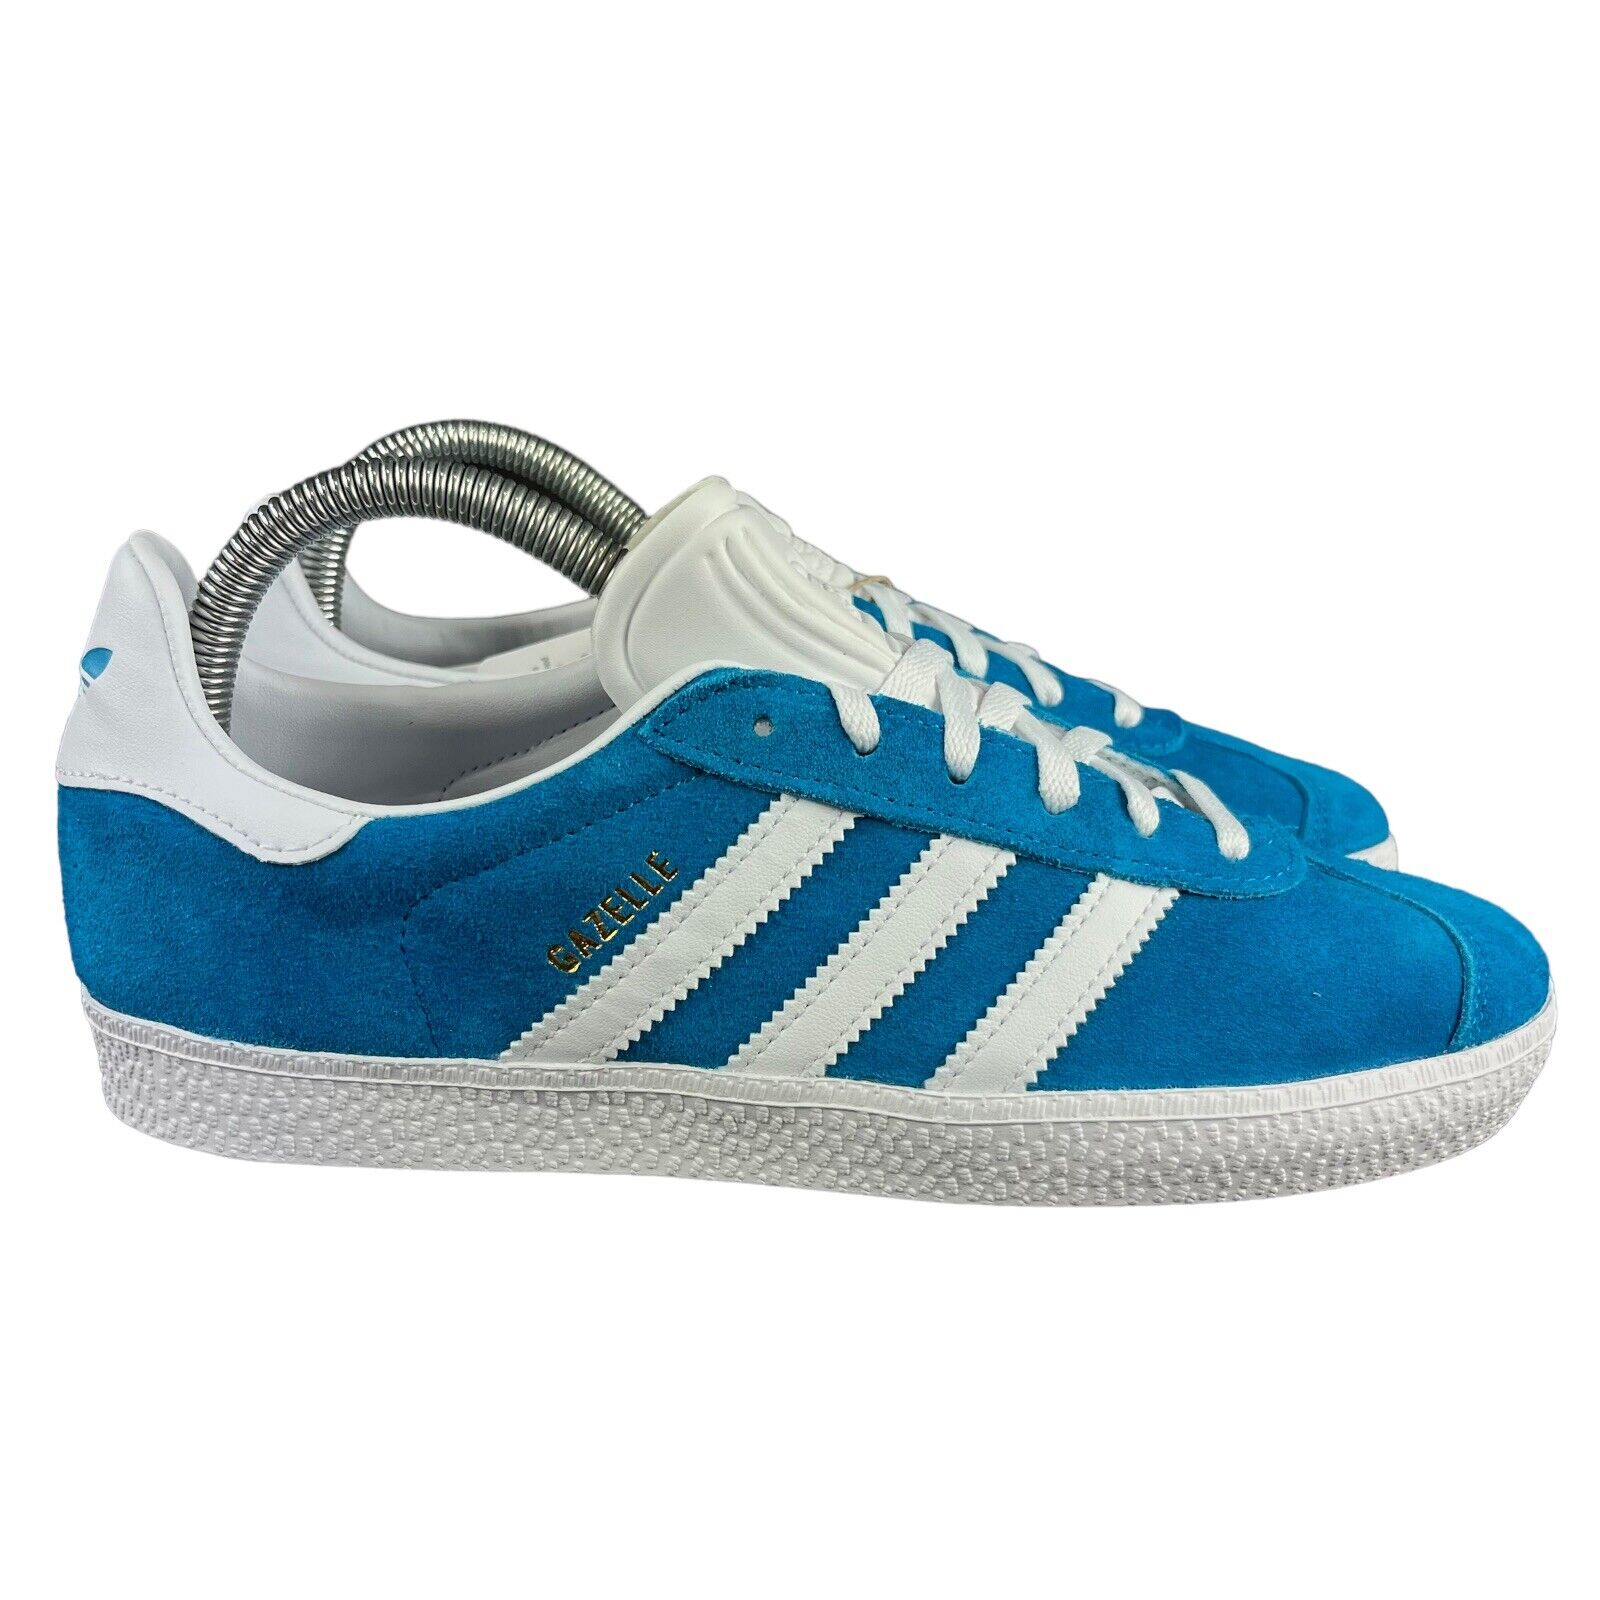 Proceso entrada Momento Adidas Originals Gazelle J Pantone Blue White Suede Shoes HP2880 Youth Sz  3.5-7 | eBay